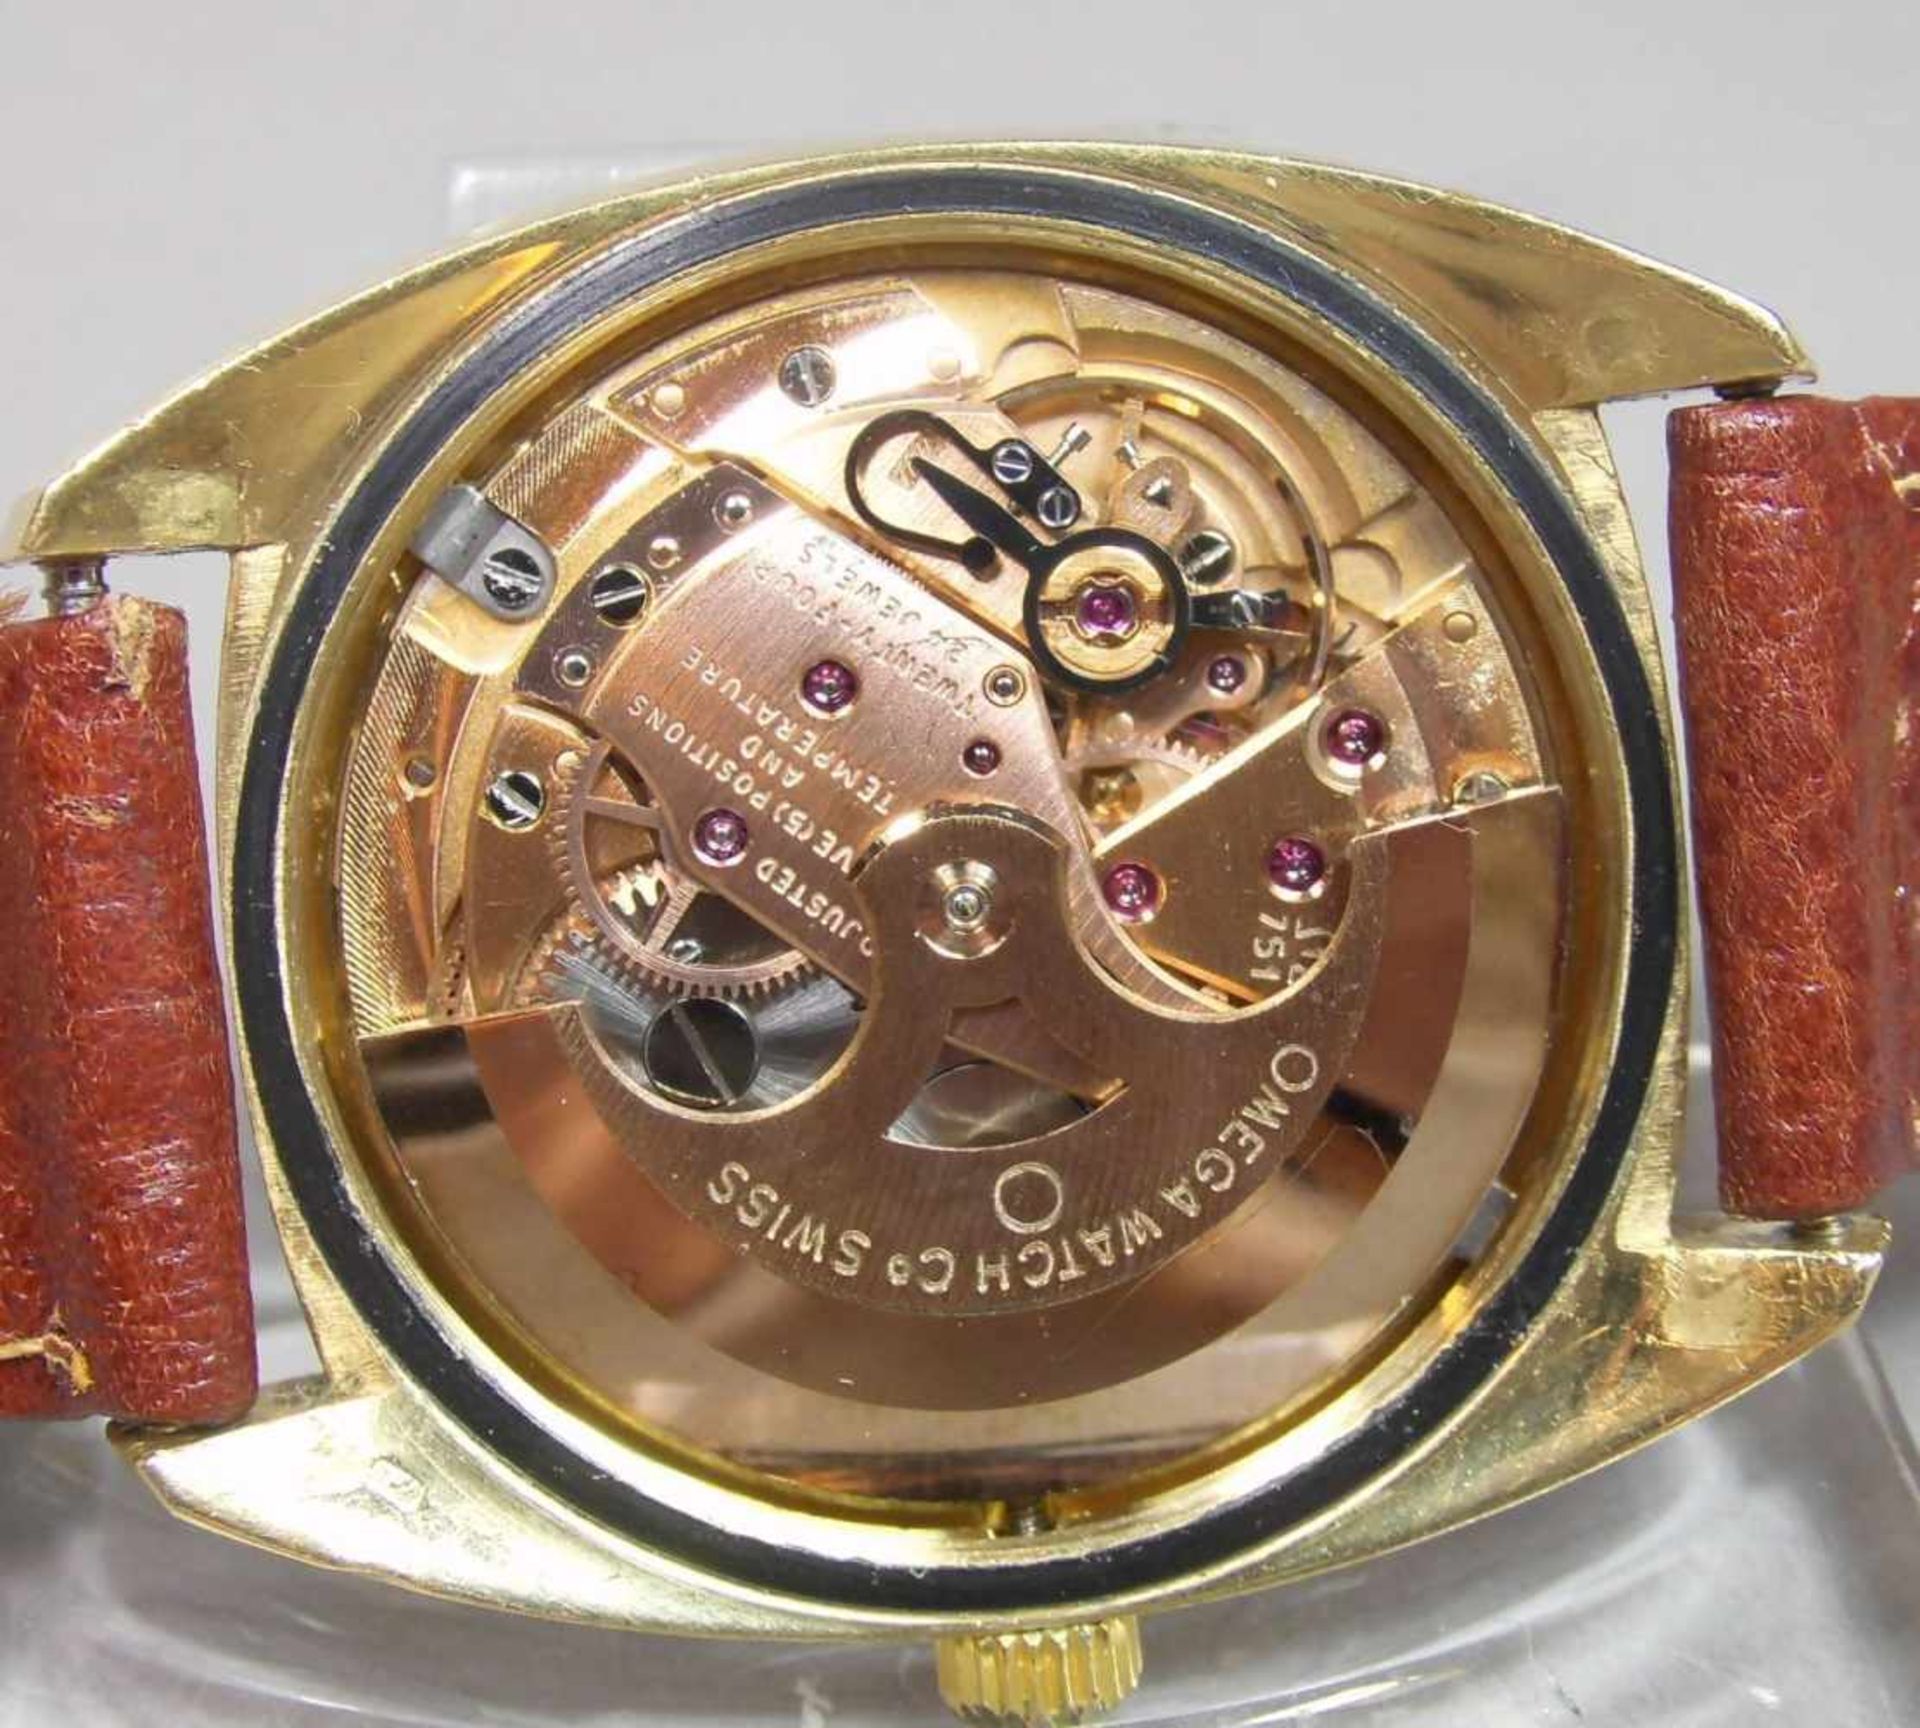 VINTAGE ARMBANDUHR: OMEGA CONSTELLATION / wristwatch, Herstellungsjahr 1968, Automatik-Uhr, - Image 11 of 11